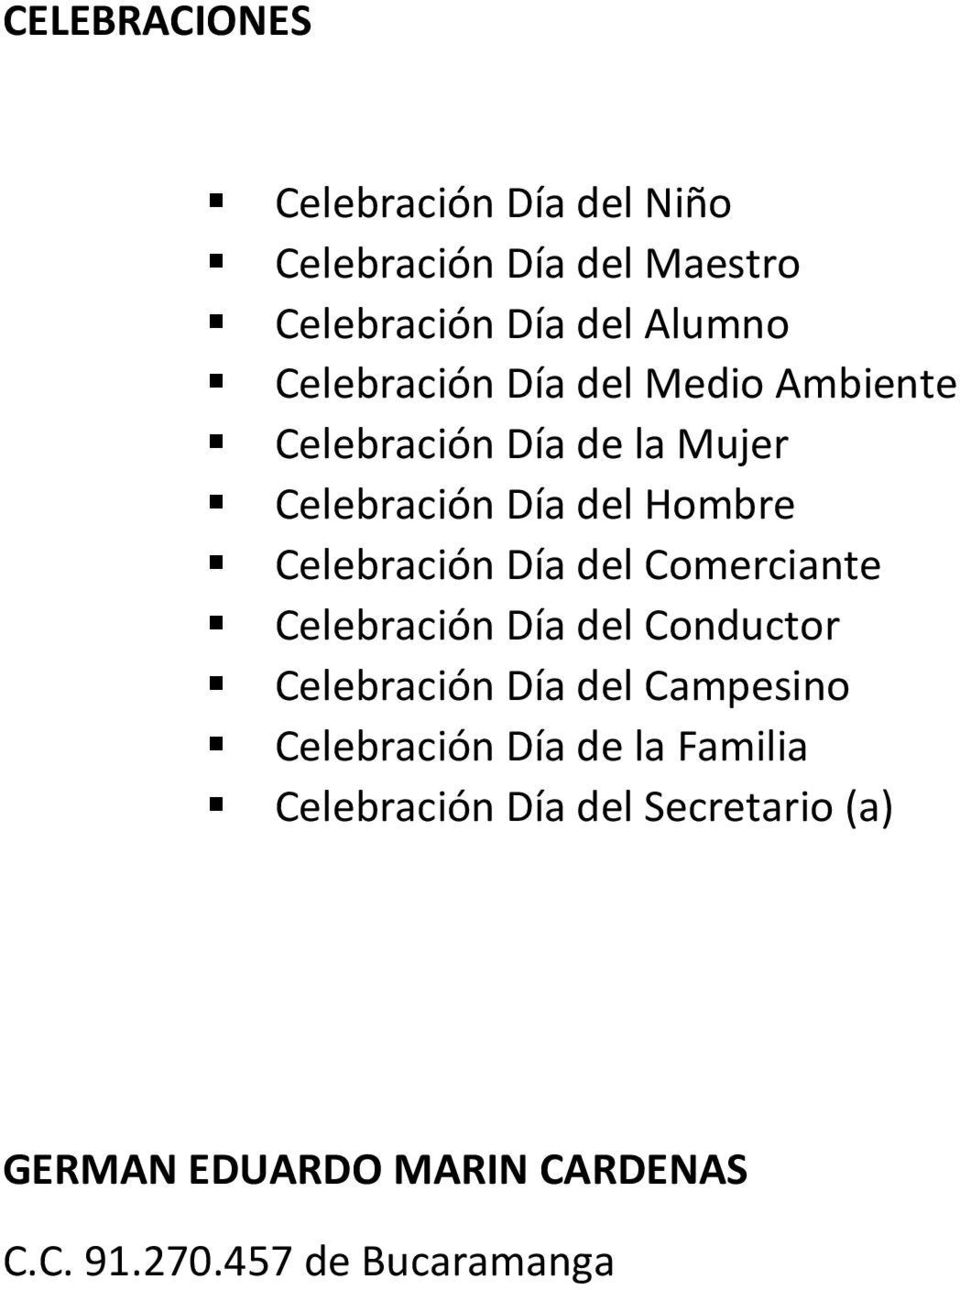 Celebración Día del Comerciante Celebración Día del Conductor Celebración Día del Campesino